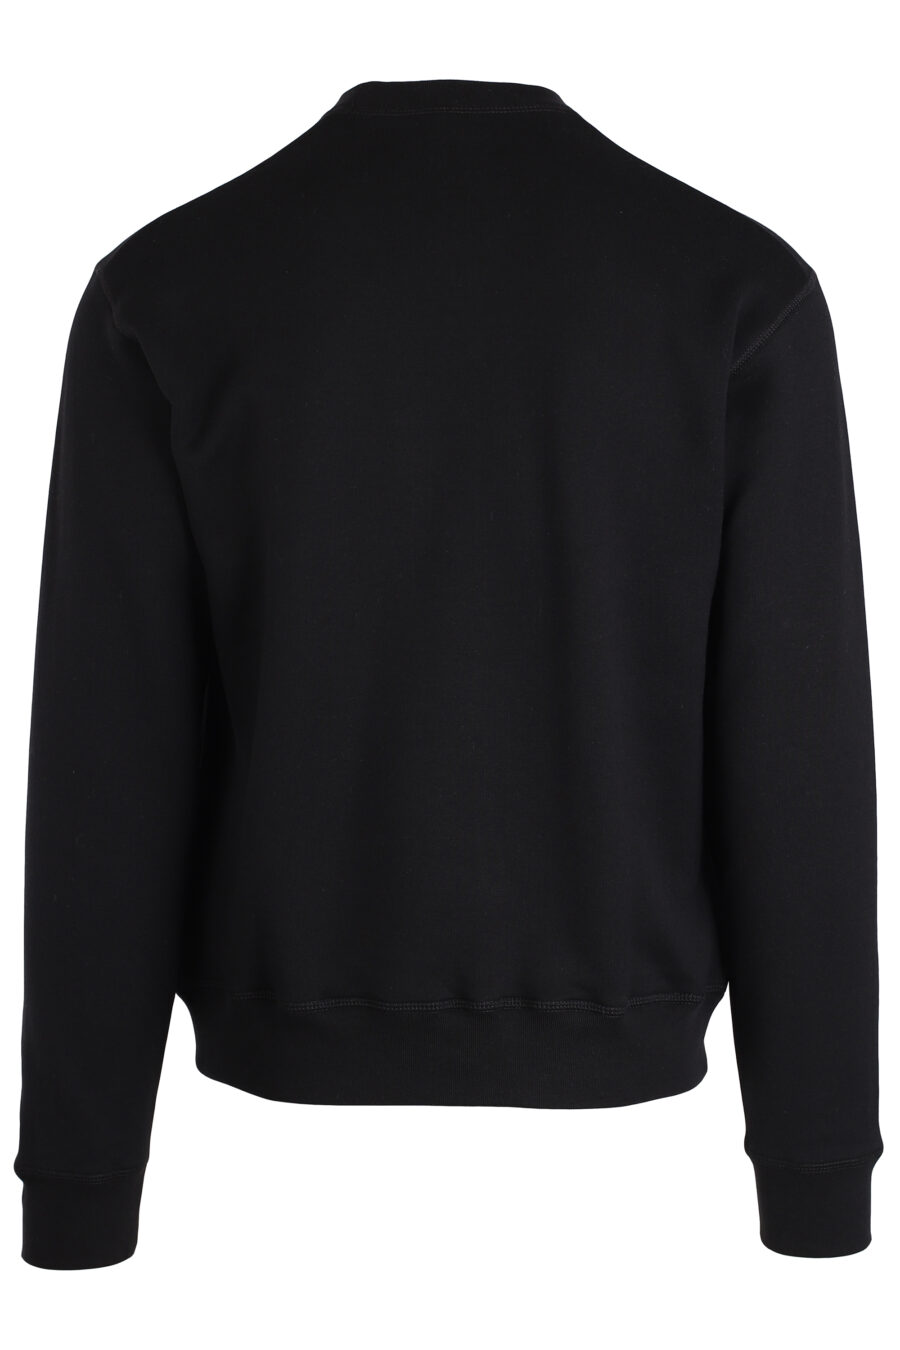 Schwarzes Sweatshirt "Zurück auf dem Planeten" - IMG 3970